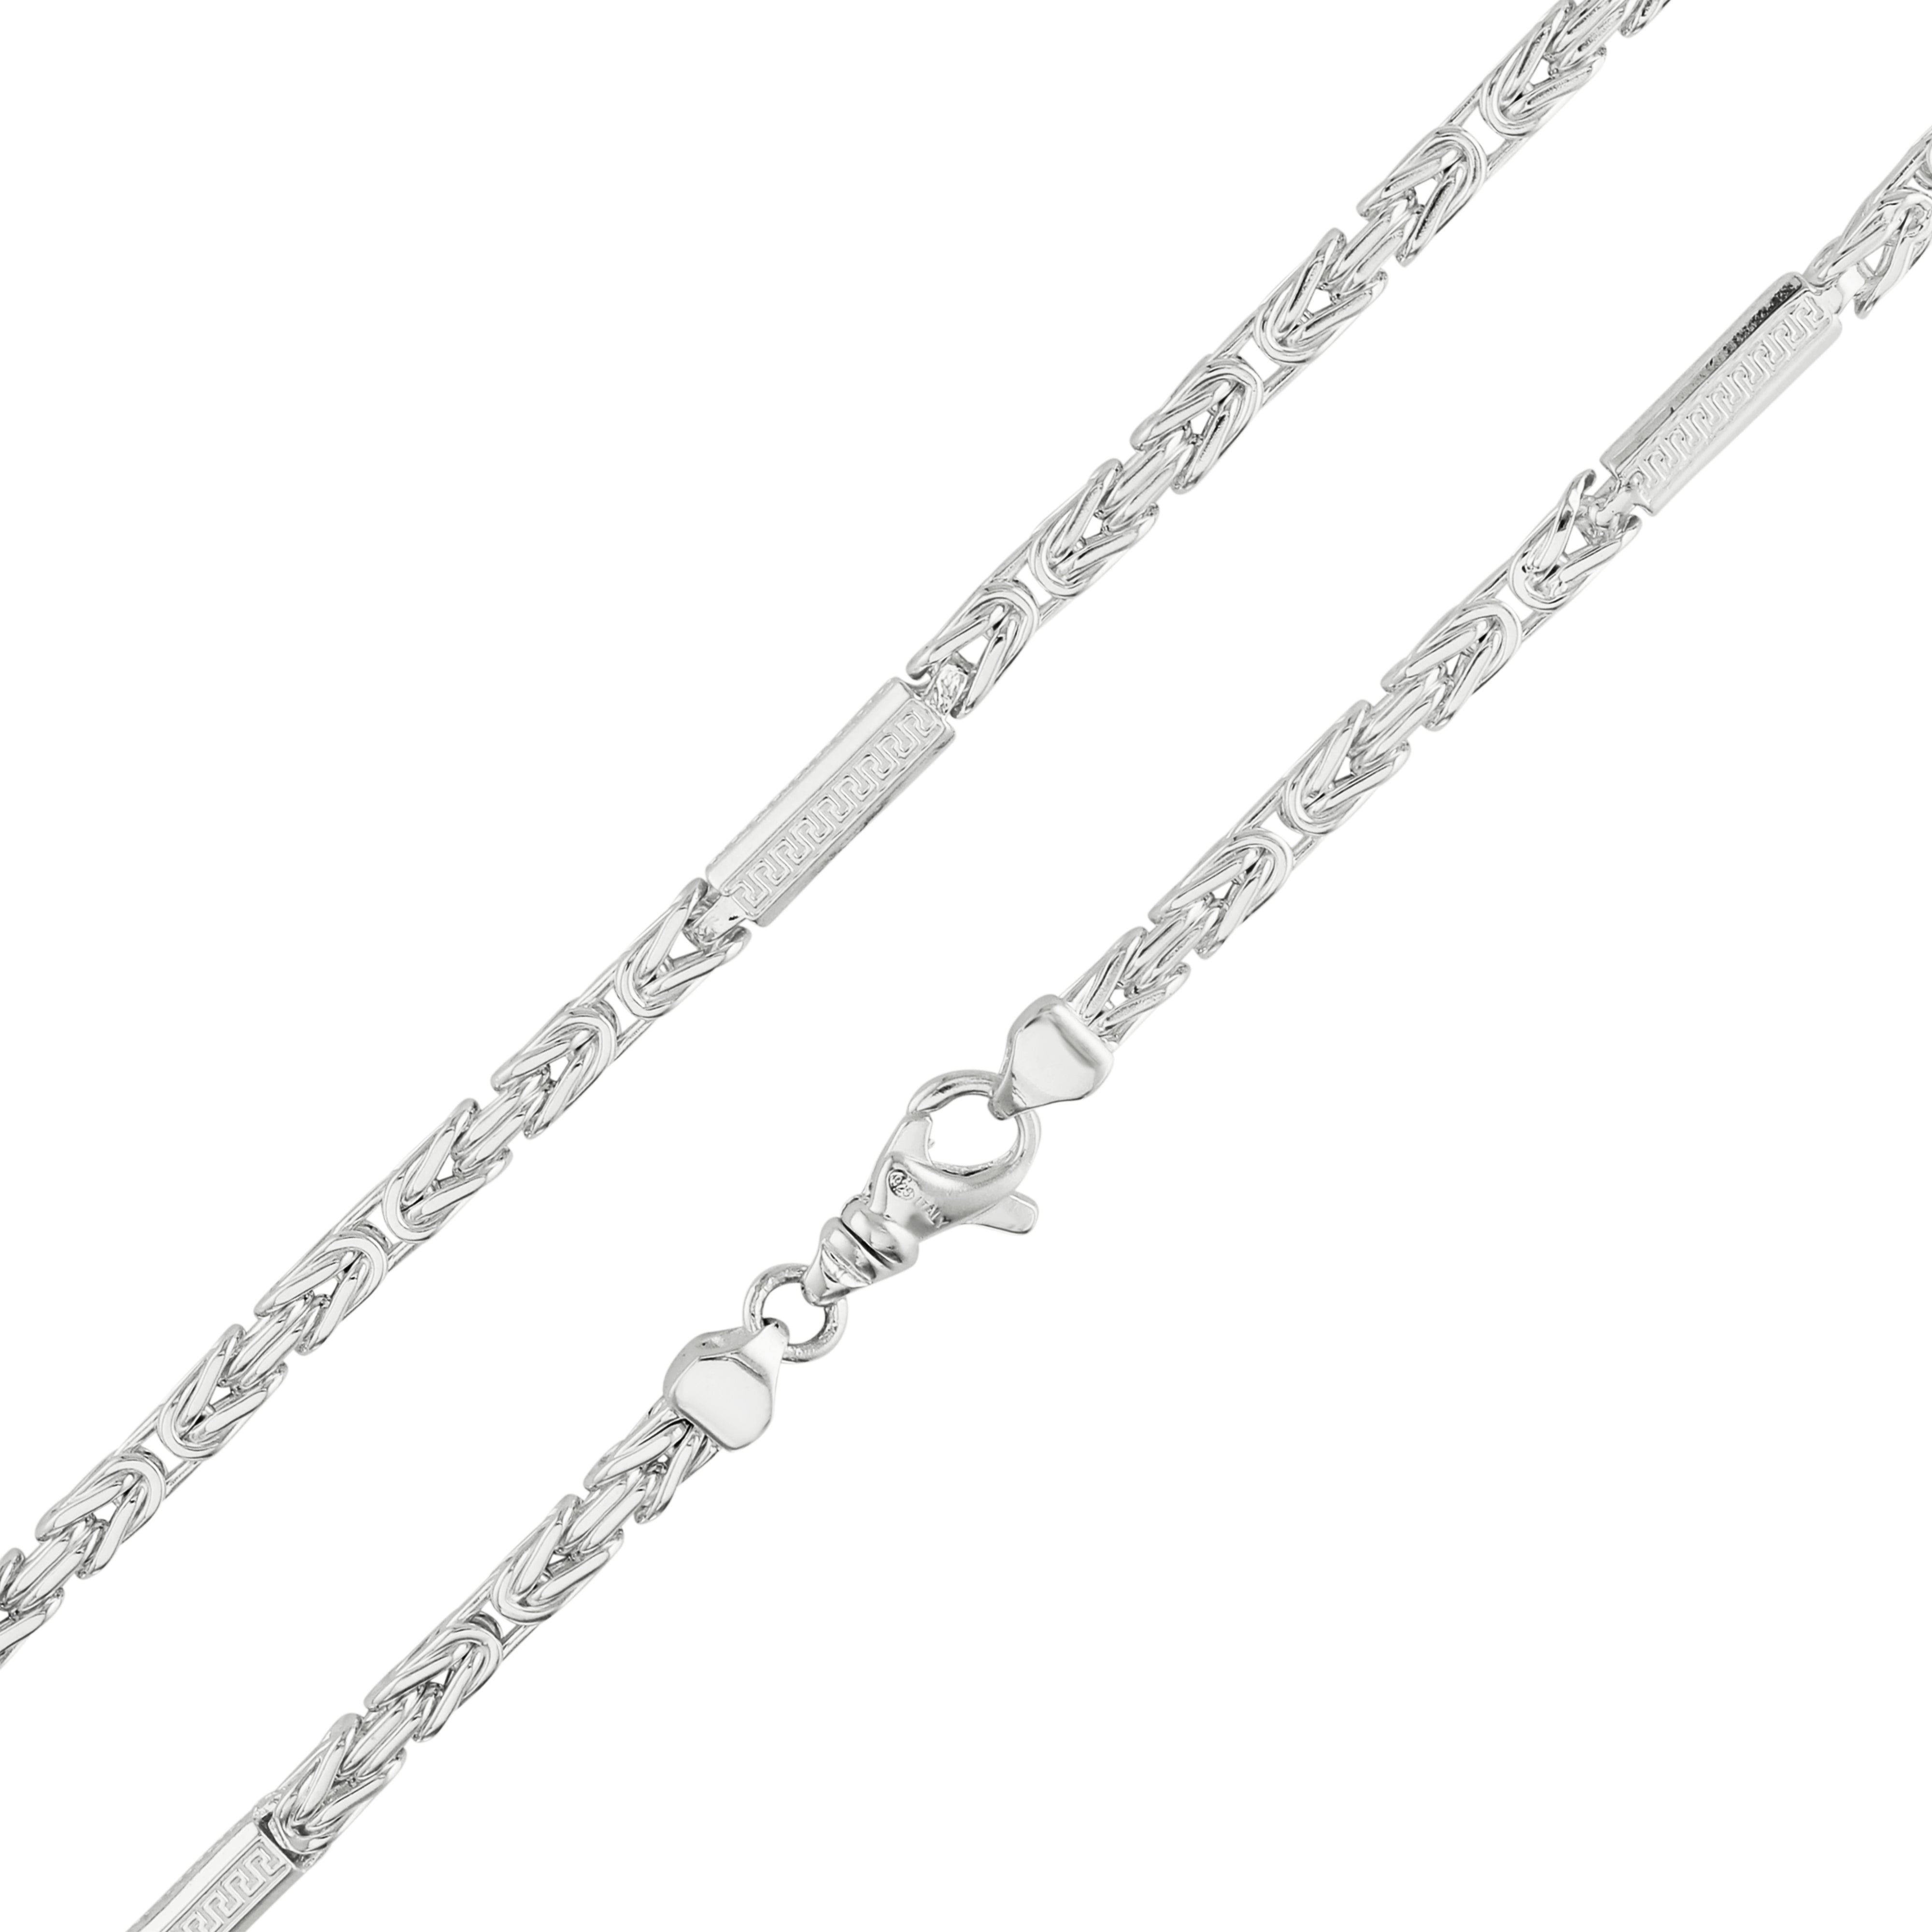 Königskette 4mm breit - santorini - 925er Silber